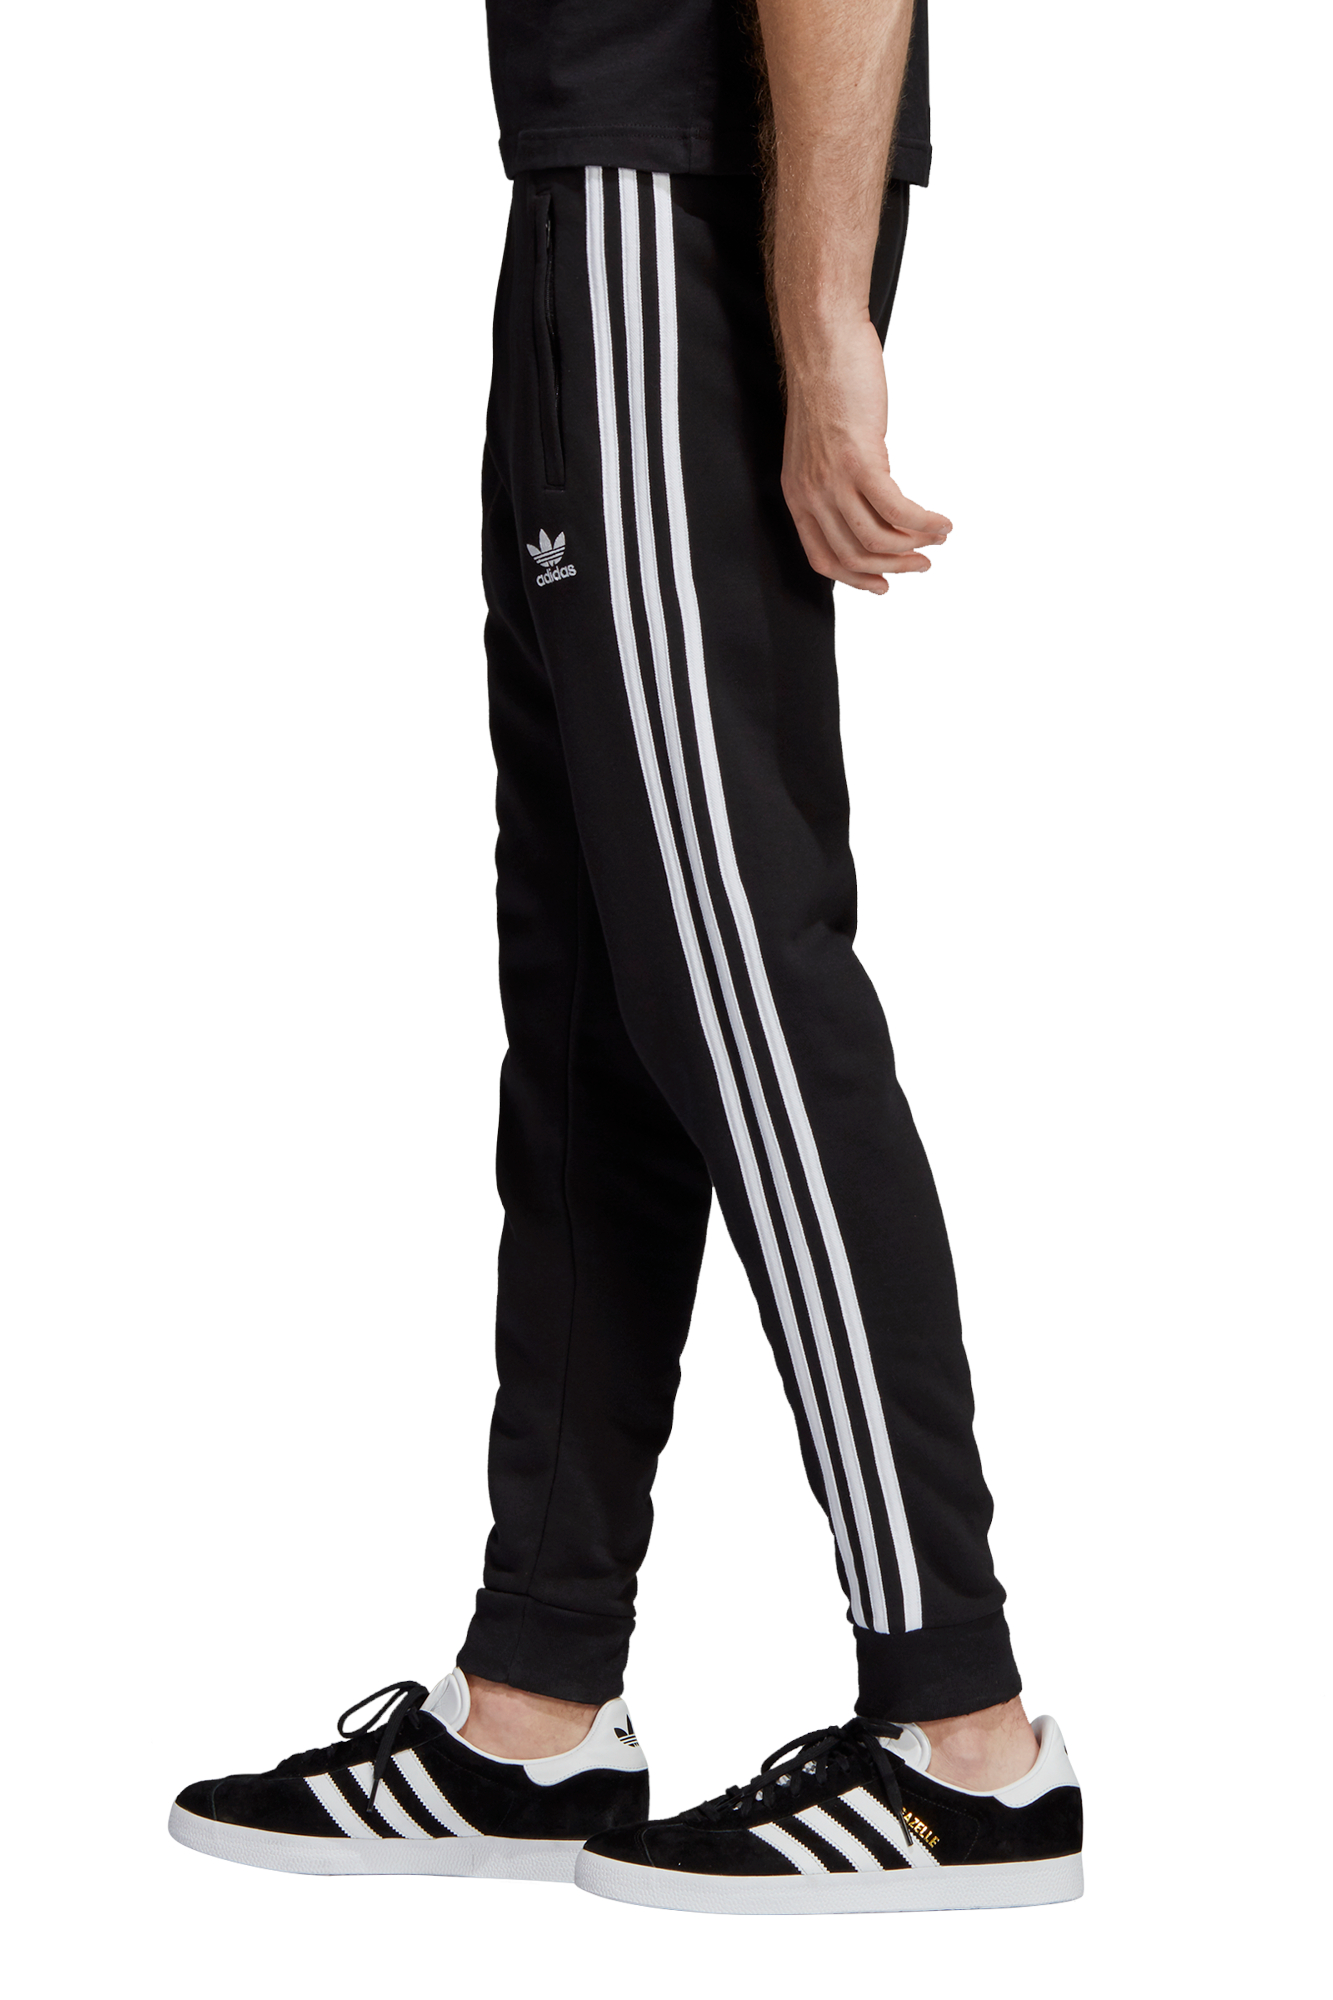 Adidas Men's Originals 3-Stripes Pants 